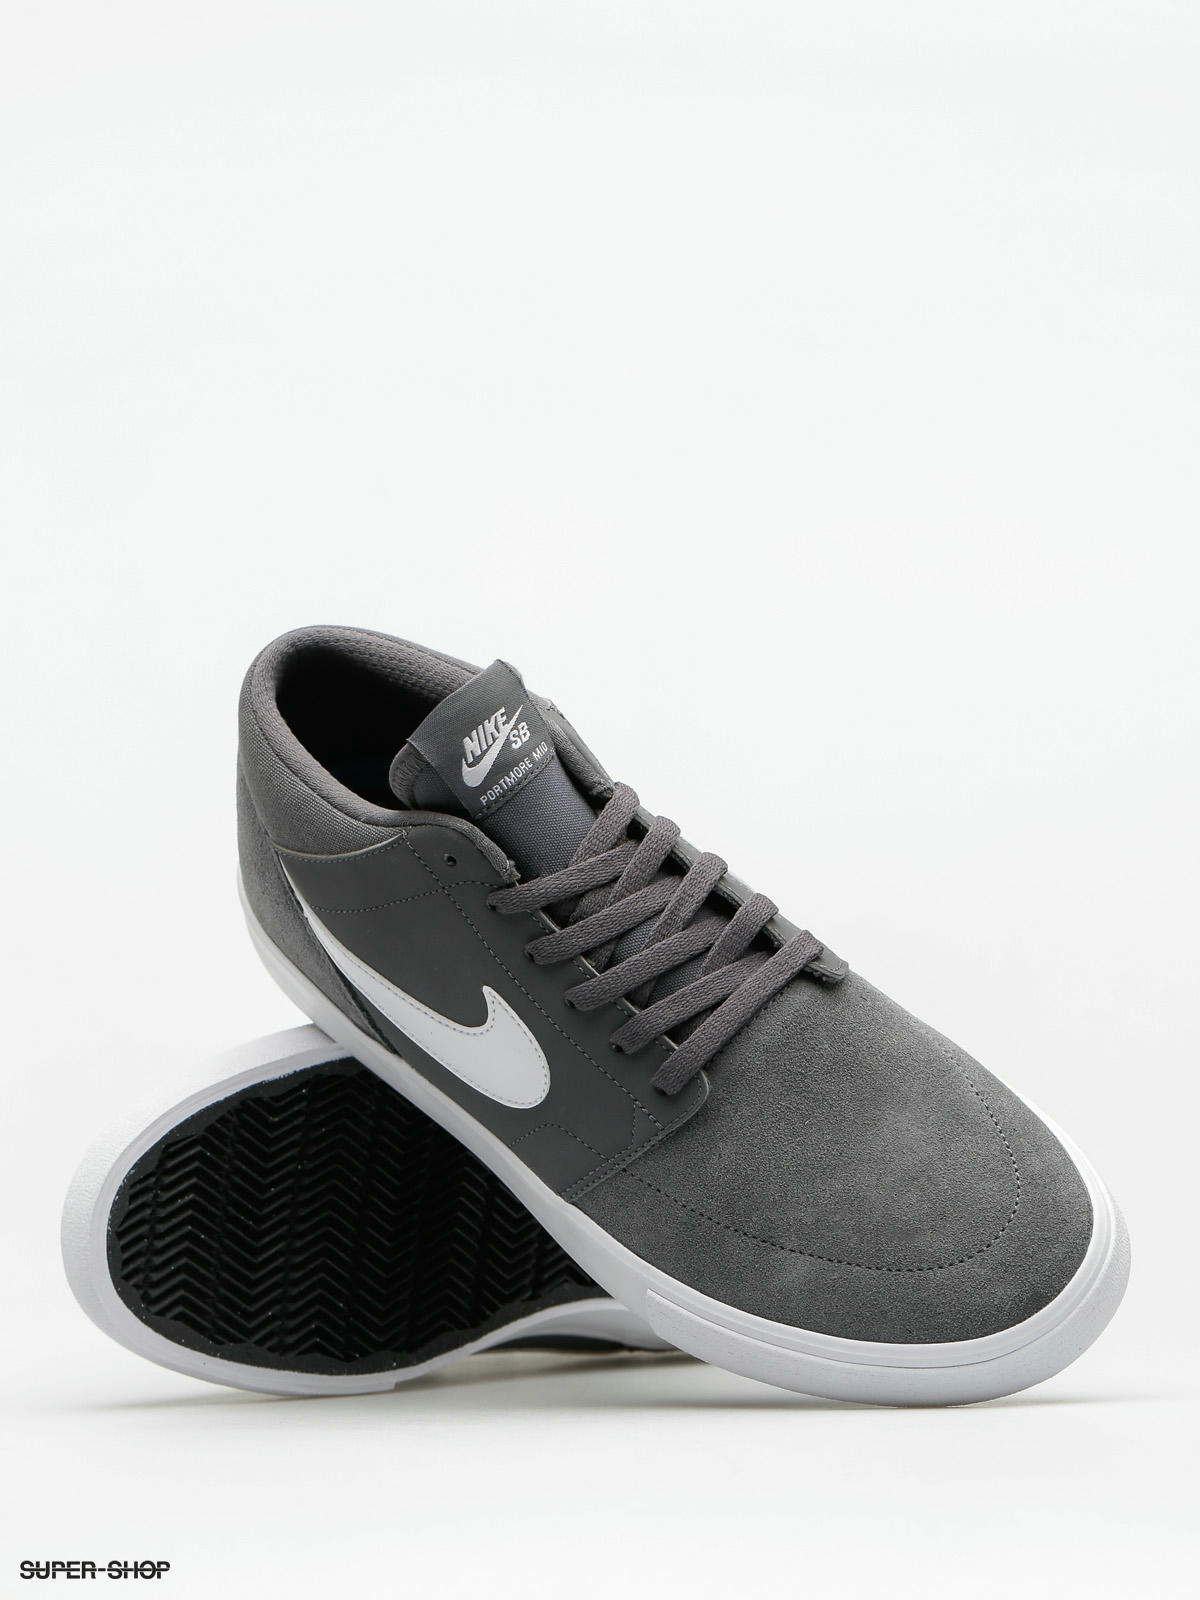 Baño Persona a cargo del juego deportivo menú Nike SB Shoes Sb Solarsoft Portmore II Mid (dark grey/white)